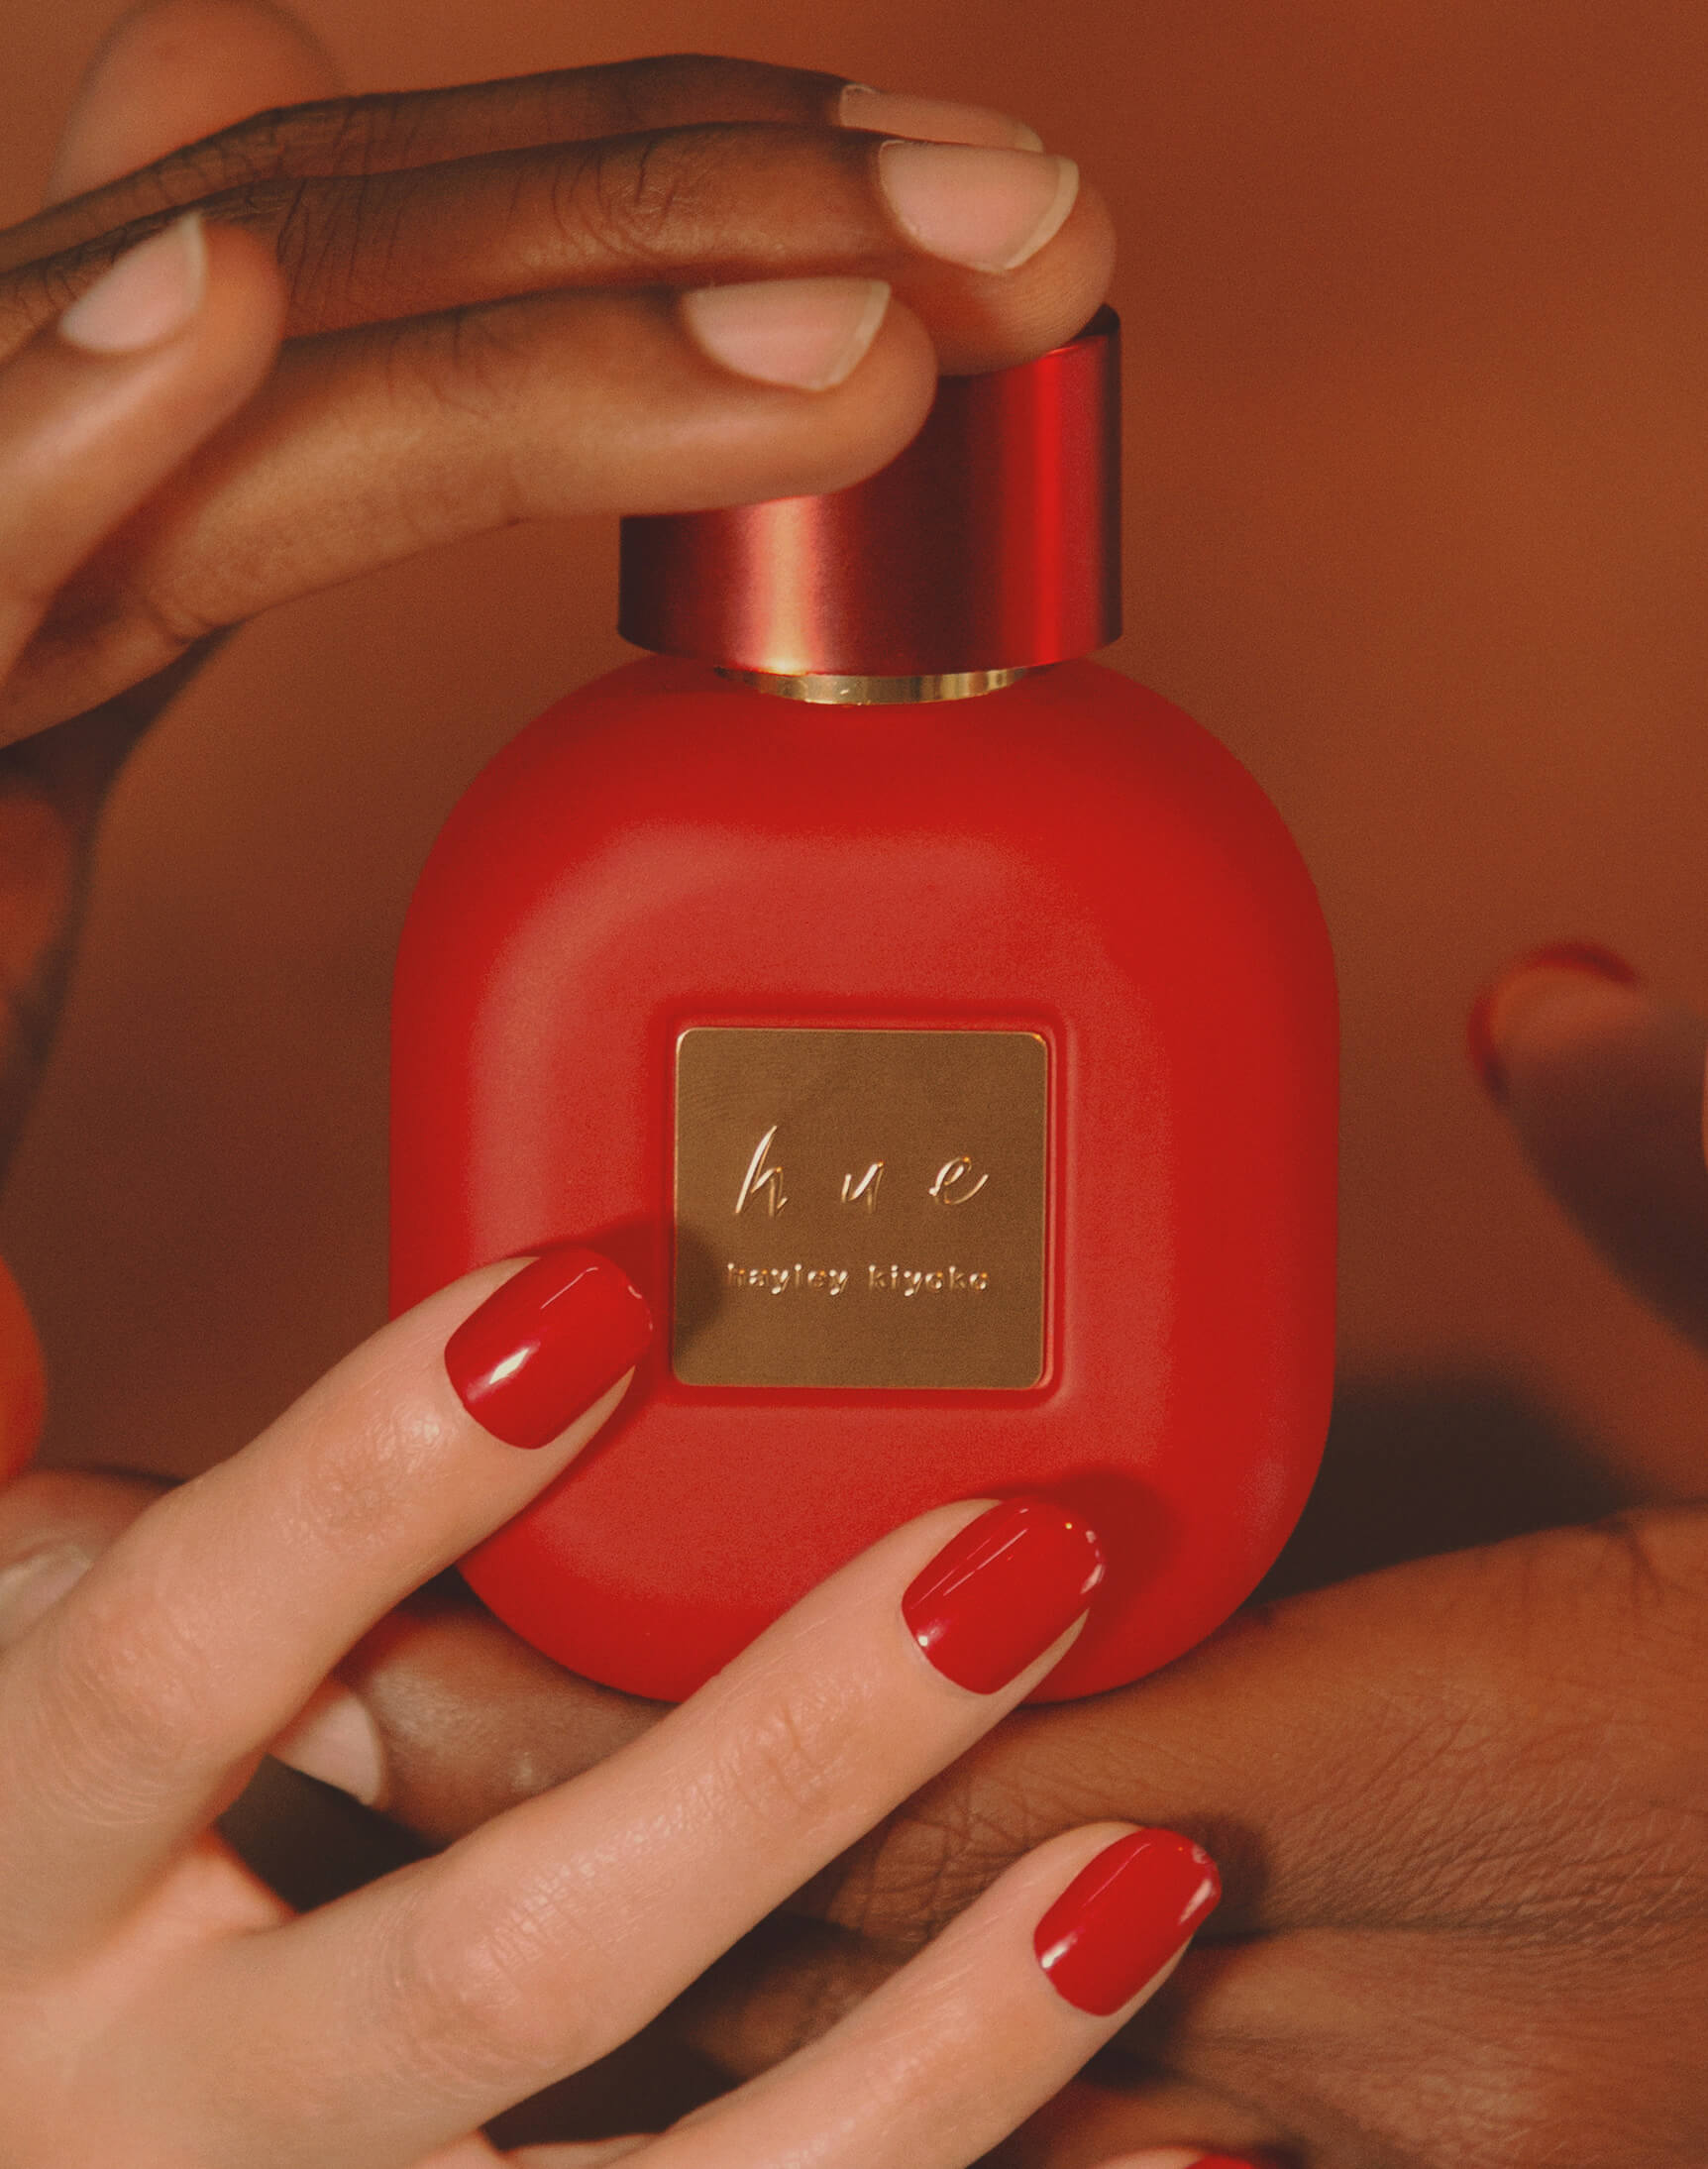 Hands reaching out to grab best-selling perfume, Hue by Hayley Kiyoko.